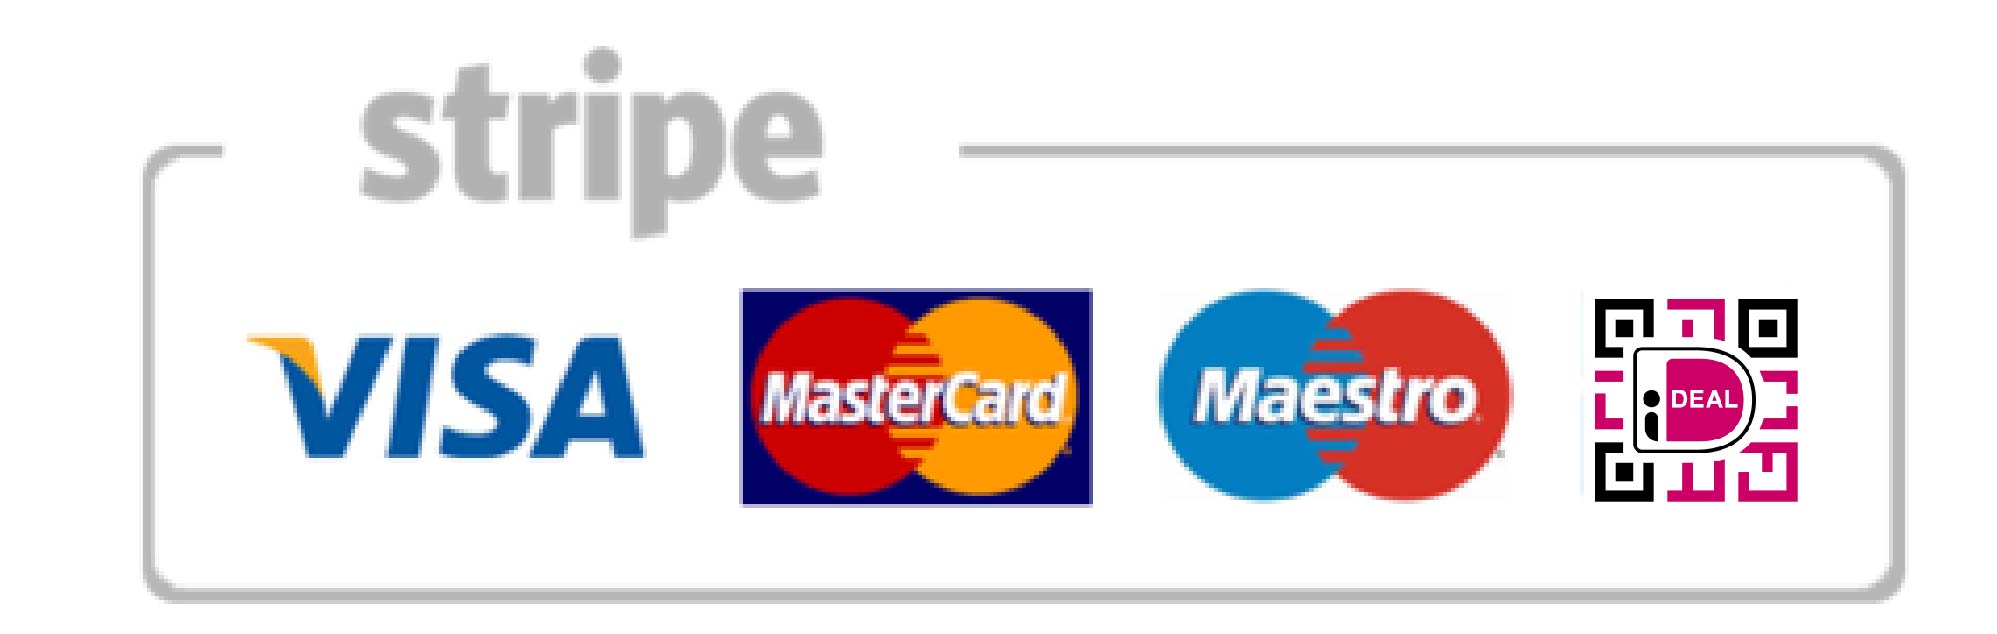 stripe_payments-marquee-av.jpg